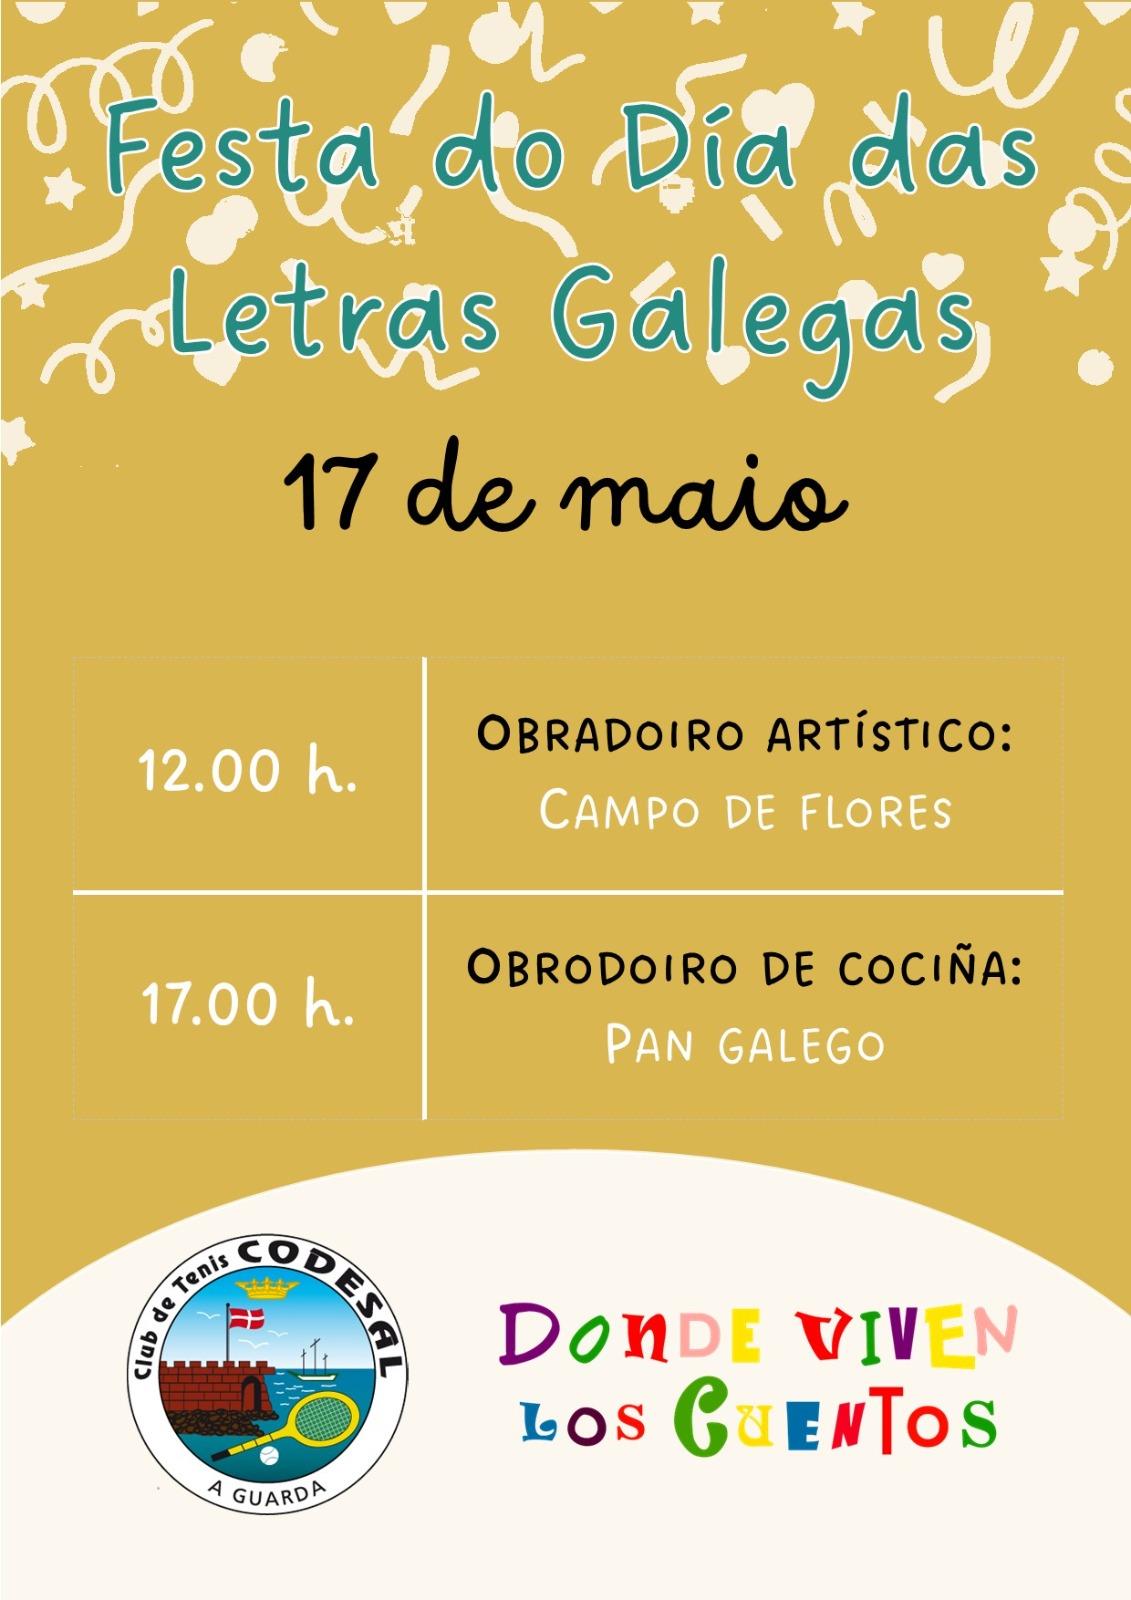 Festa do día das letras galegas 17 de maio